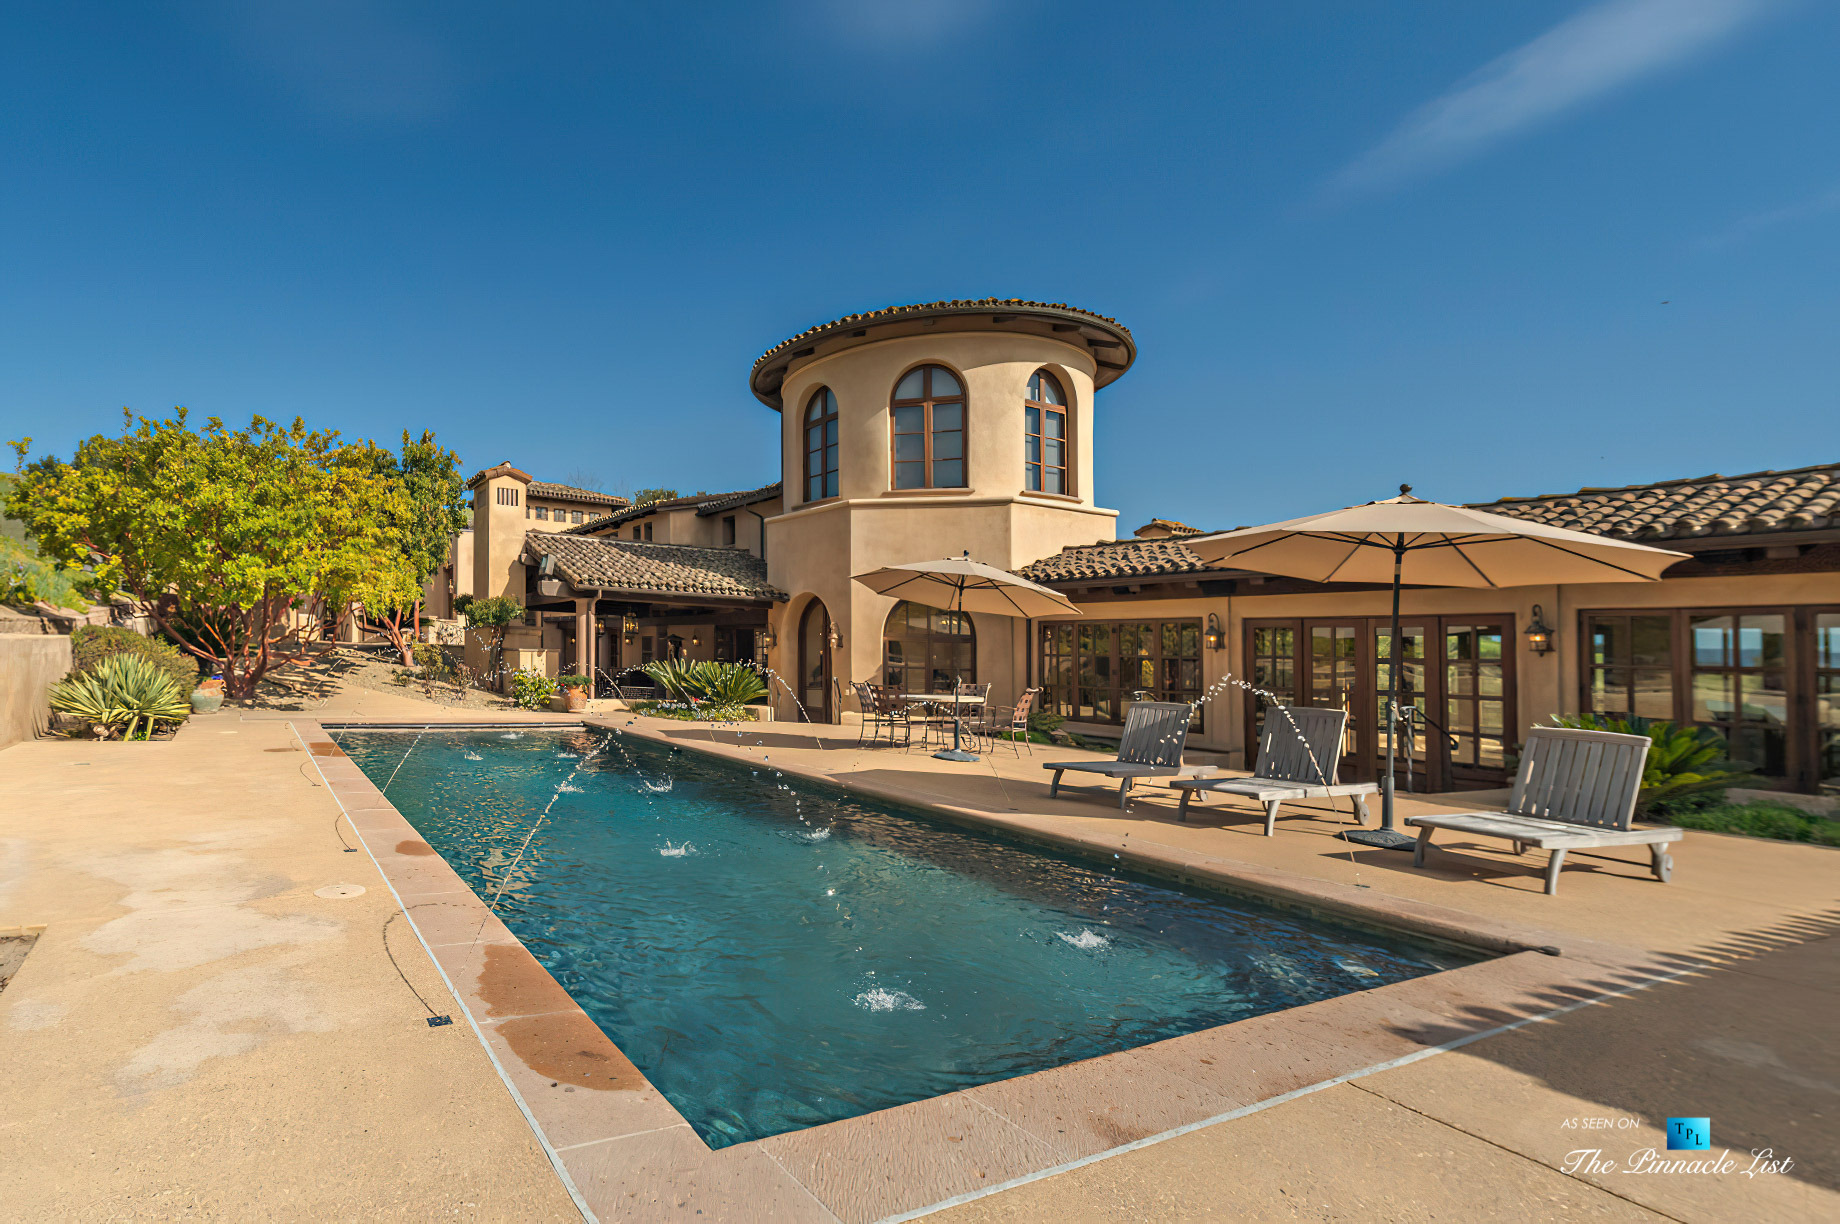 Spectacular 251 Acre Twin Oak Ranch – 2667 Via De Los Ranchos, Los Olivos, CA, USA – Italian Villa Residence Exterior Pool